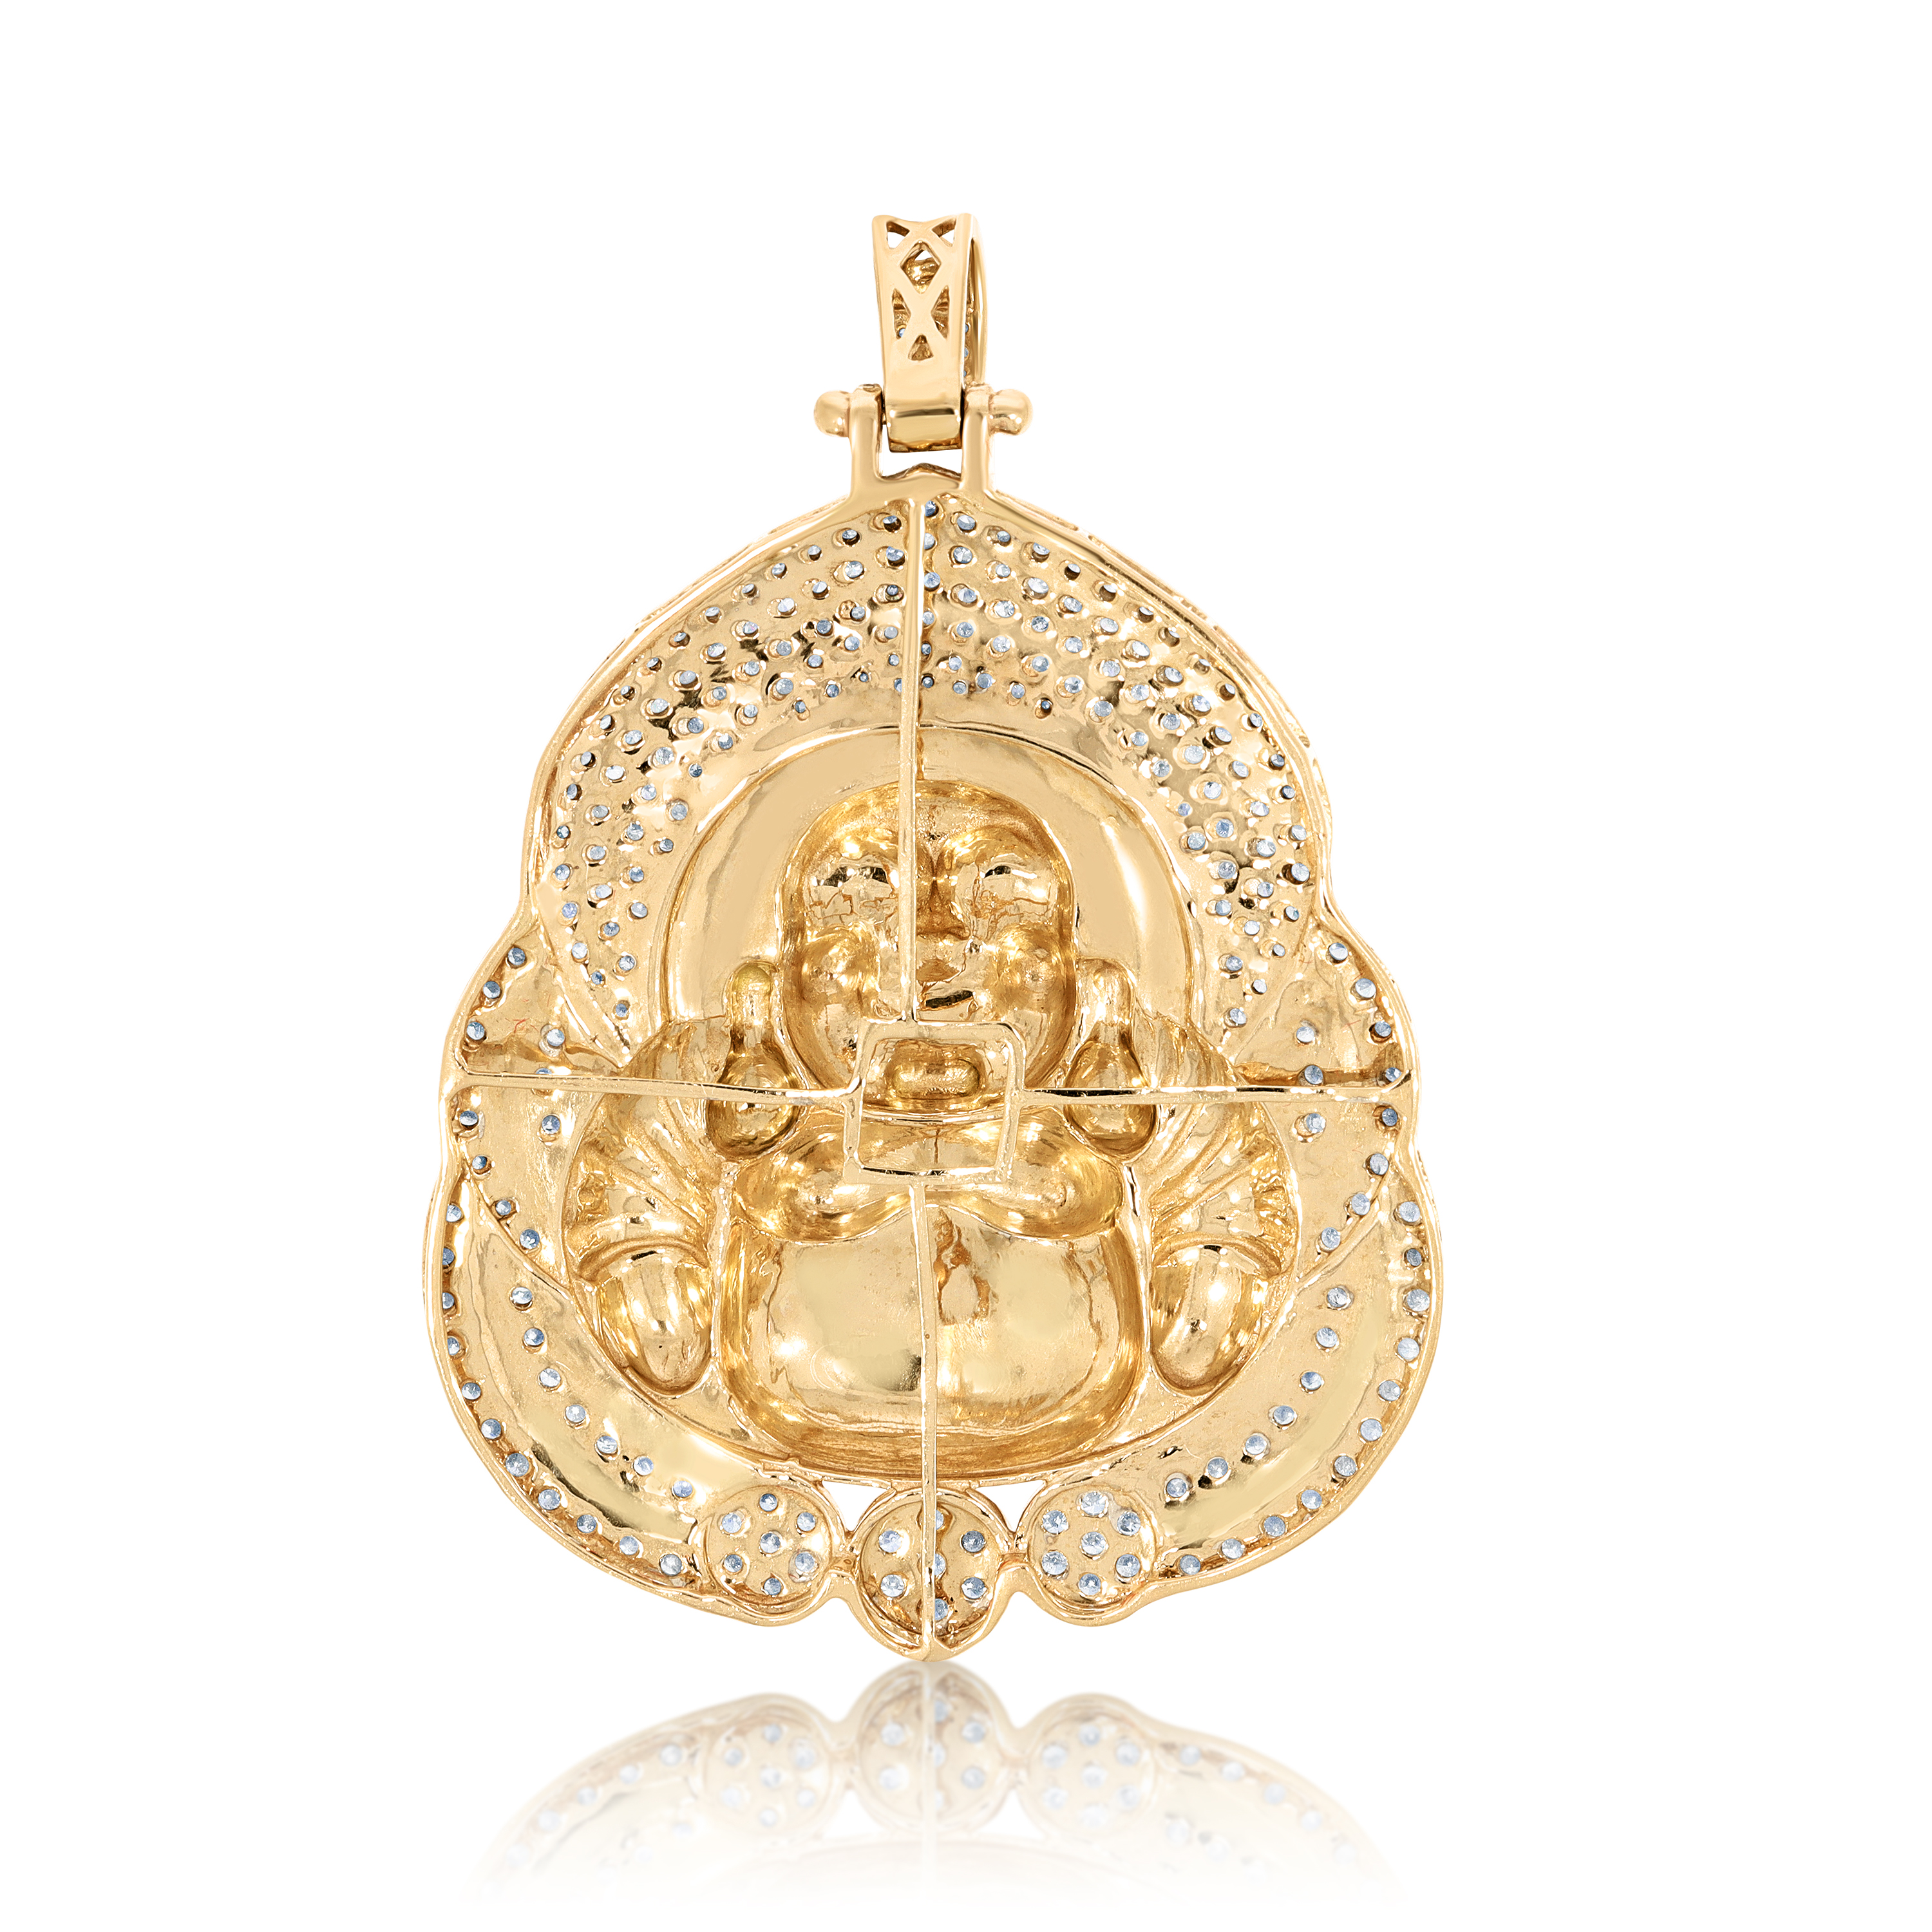 Diamond Buddha Pendant 4.40 ct. 10K Yellow Gold